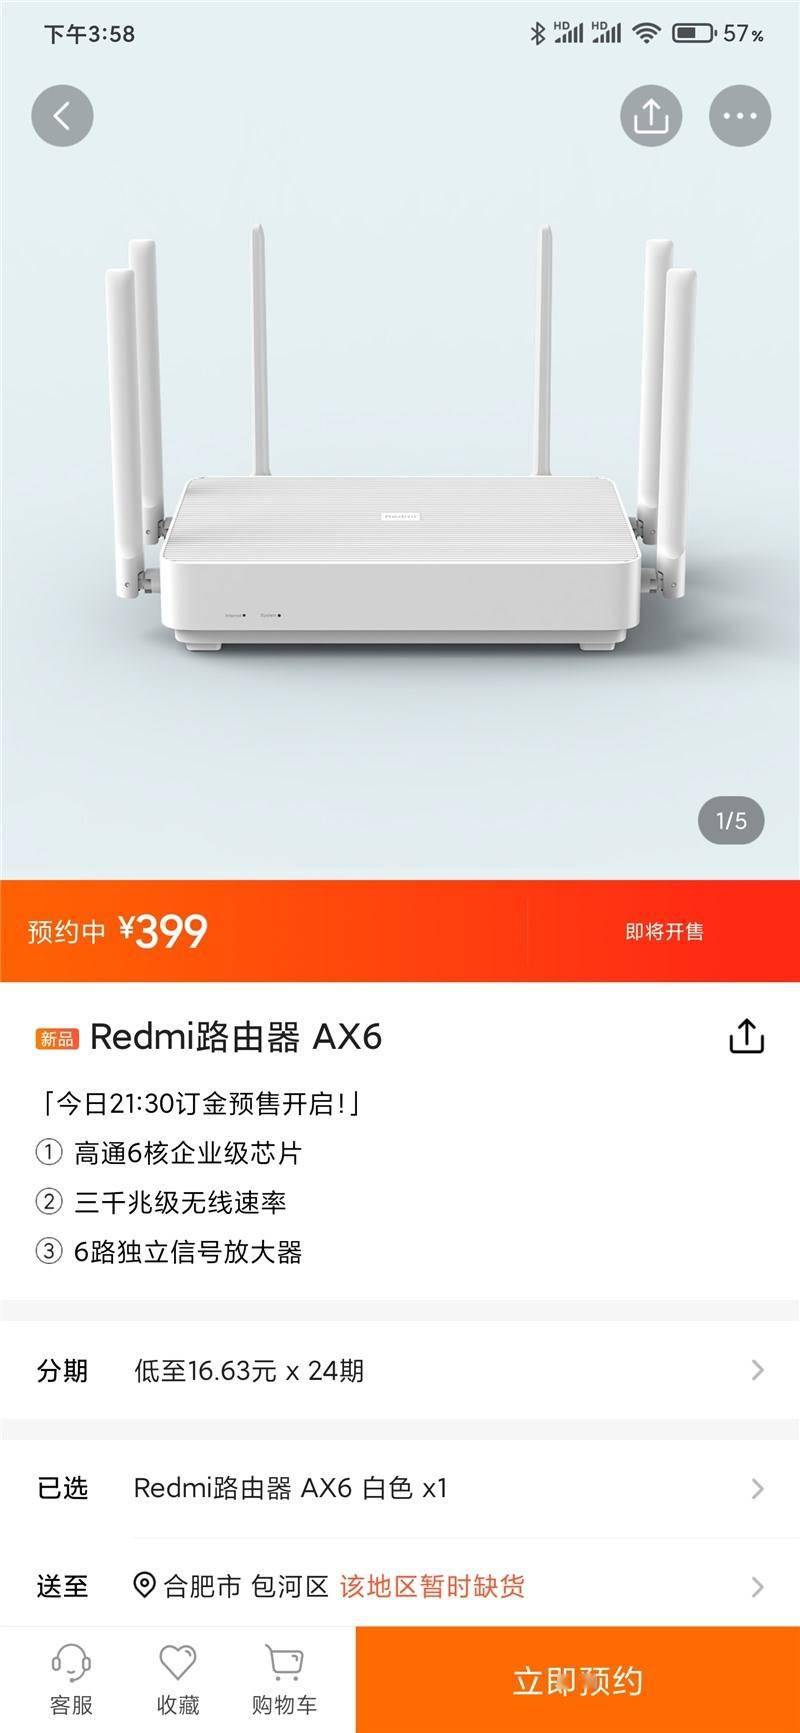 小米wifi 6 路由器 redmi ax6 上架:售价 399 元